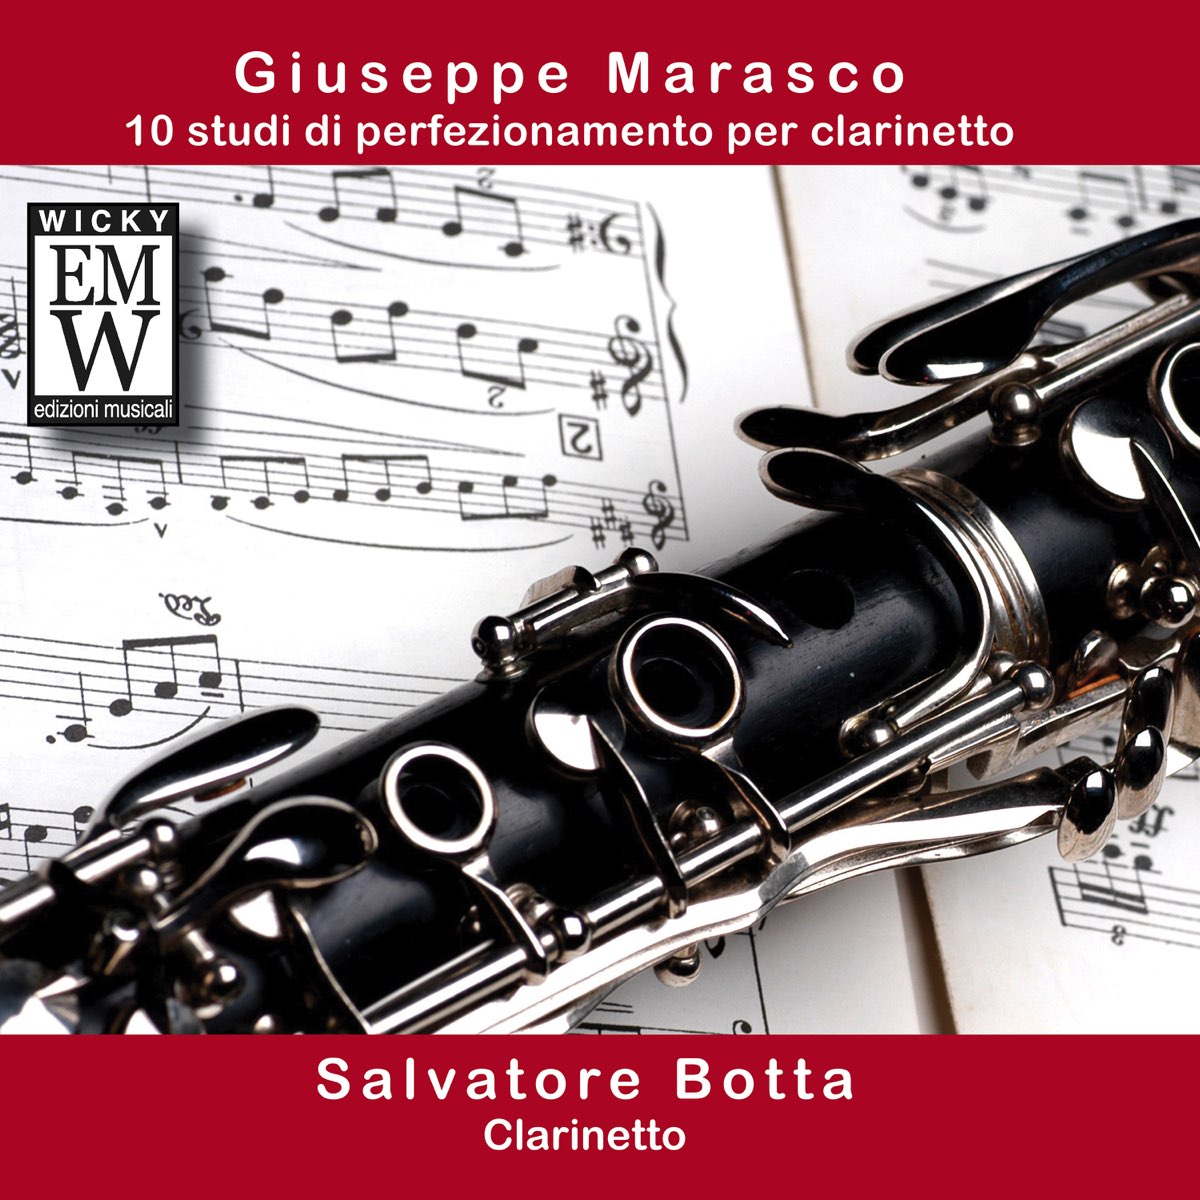 Giuseppe Marasco (10 studi di perfezionamento per clarinetto) by Salvatore  Botta on Apple Music